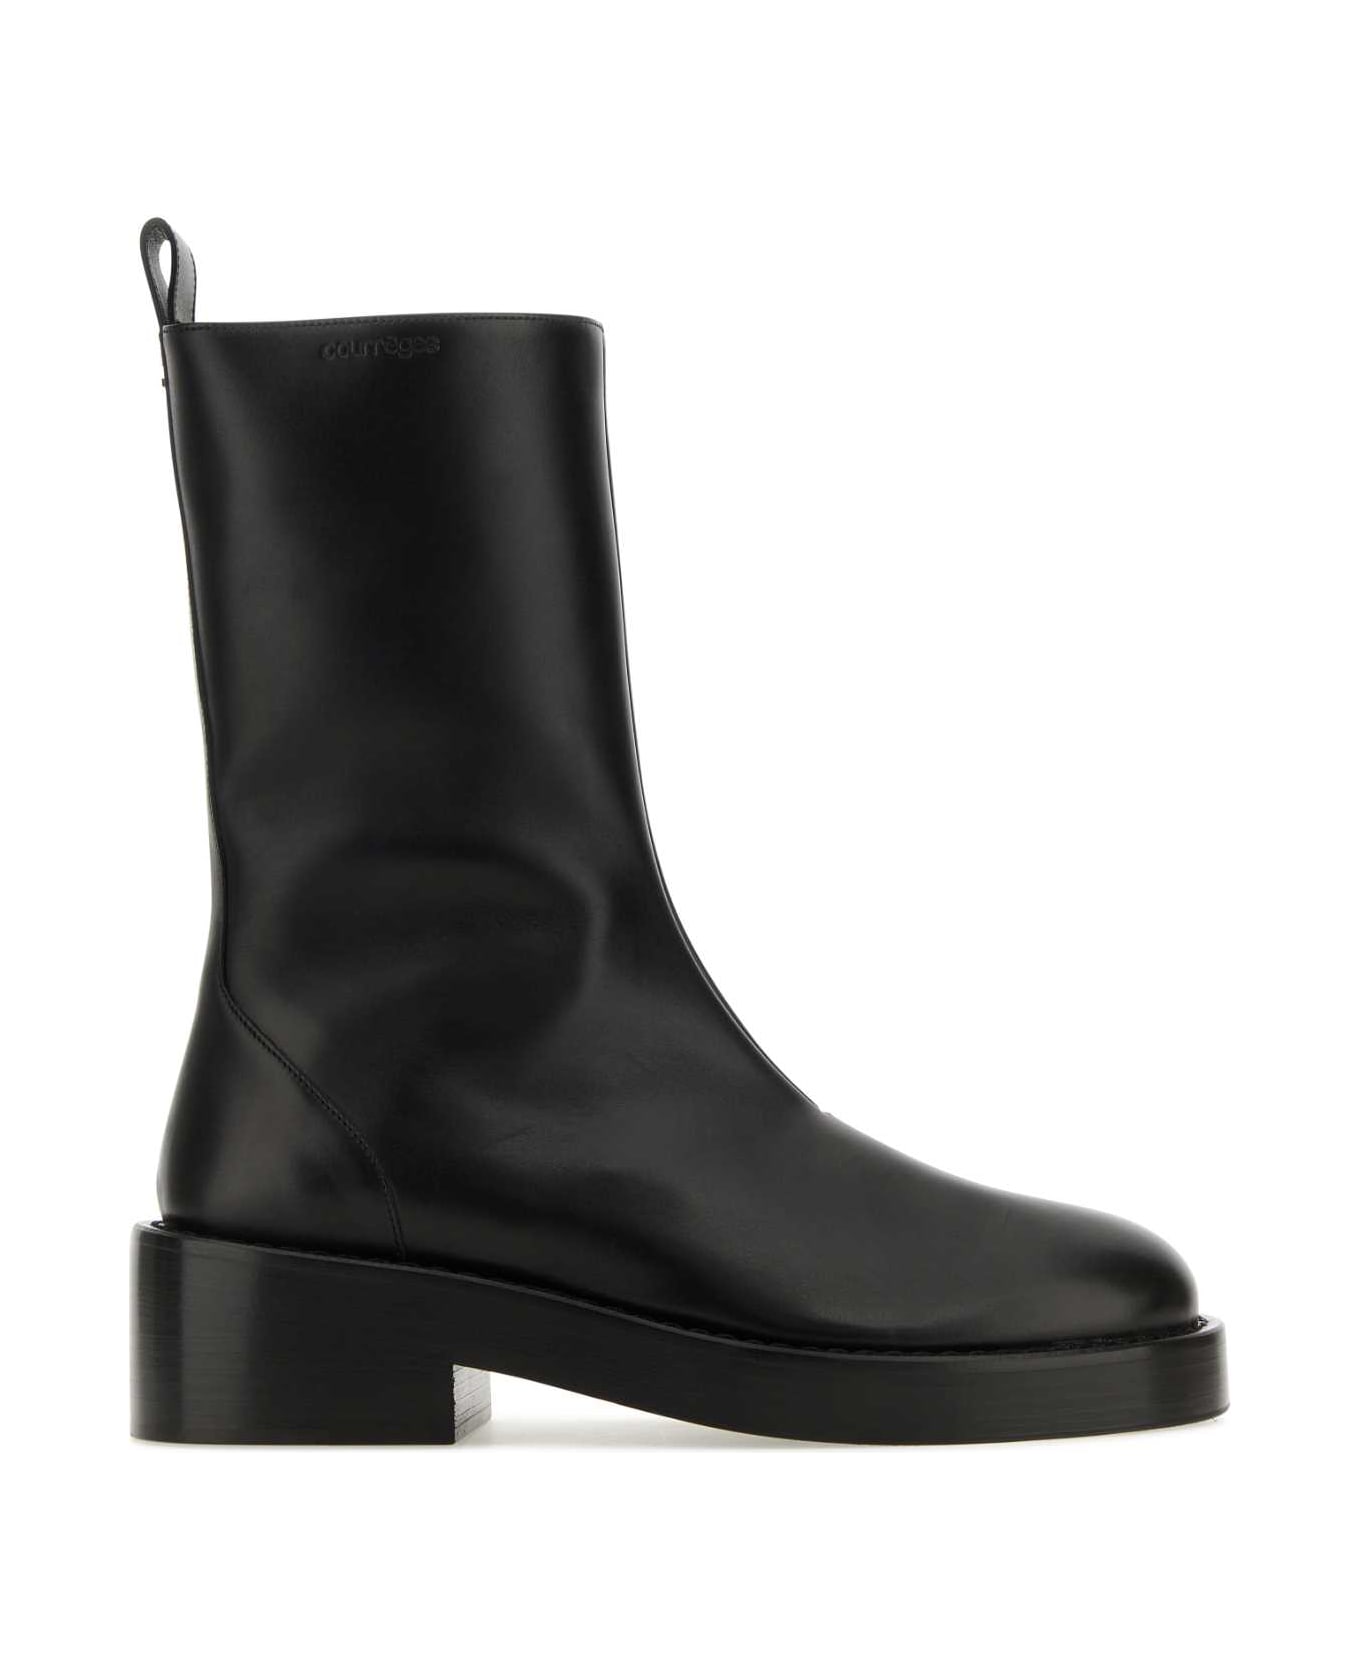 Courrèges Black Leather Ankle Boots - Black